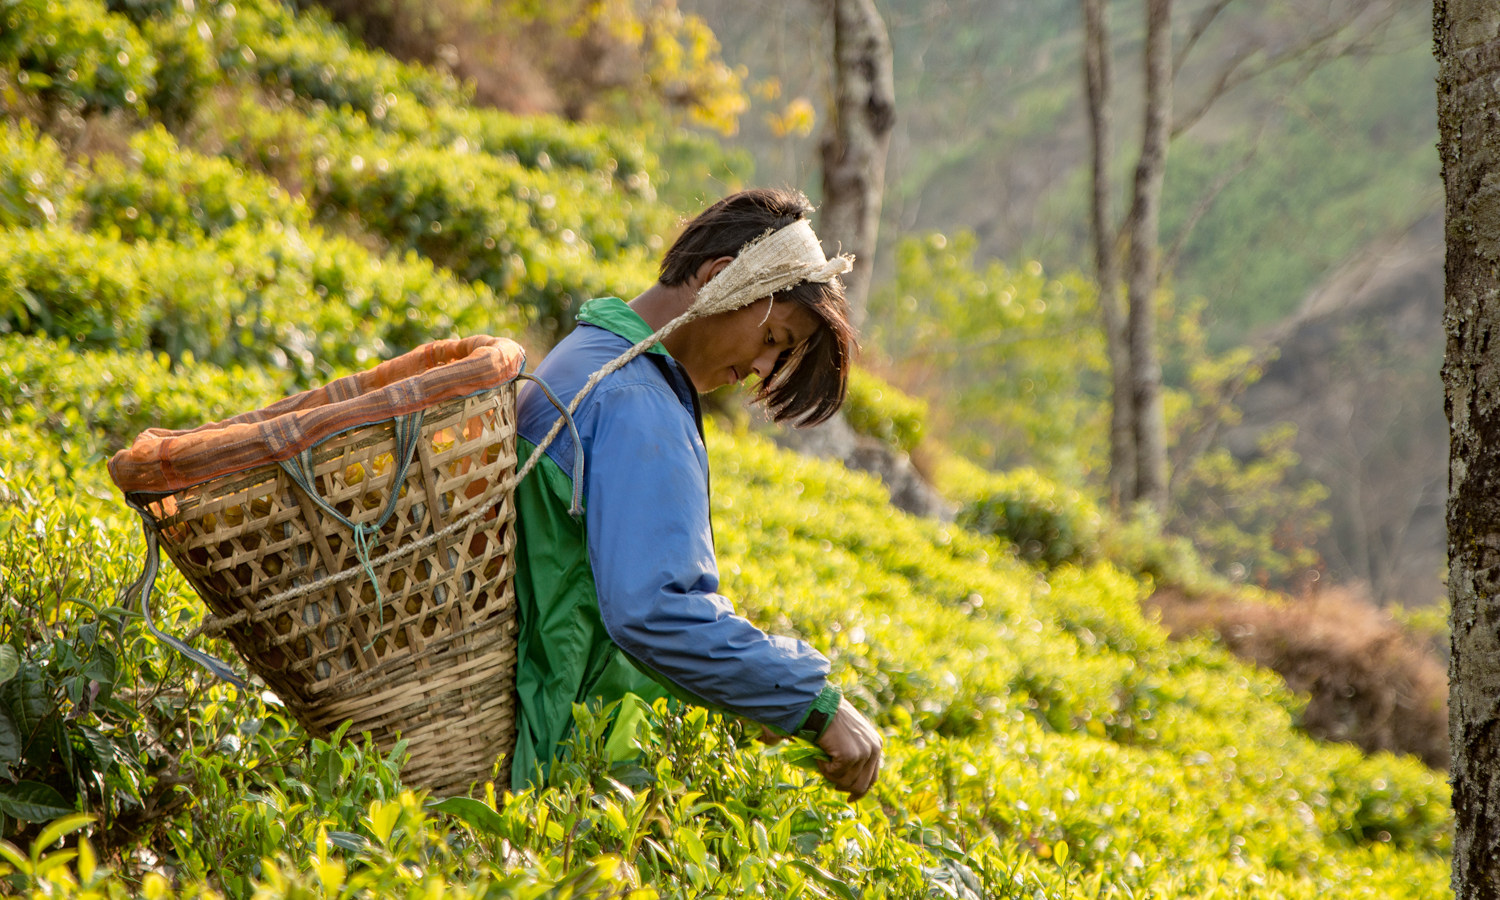 尼泊尔茶是一项旨在扩大尼泊尔东部社区获得教育和就业机会的业务。